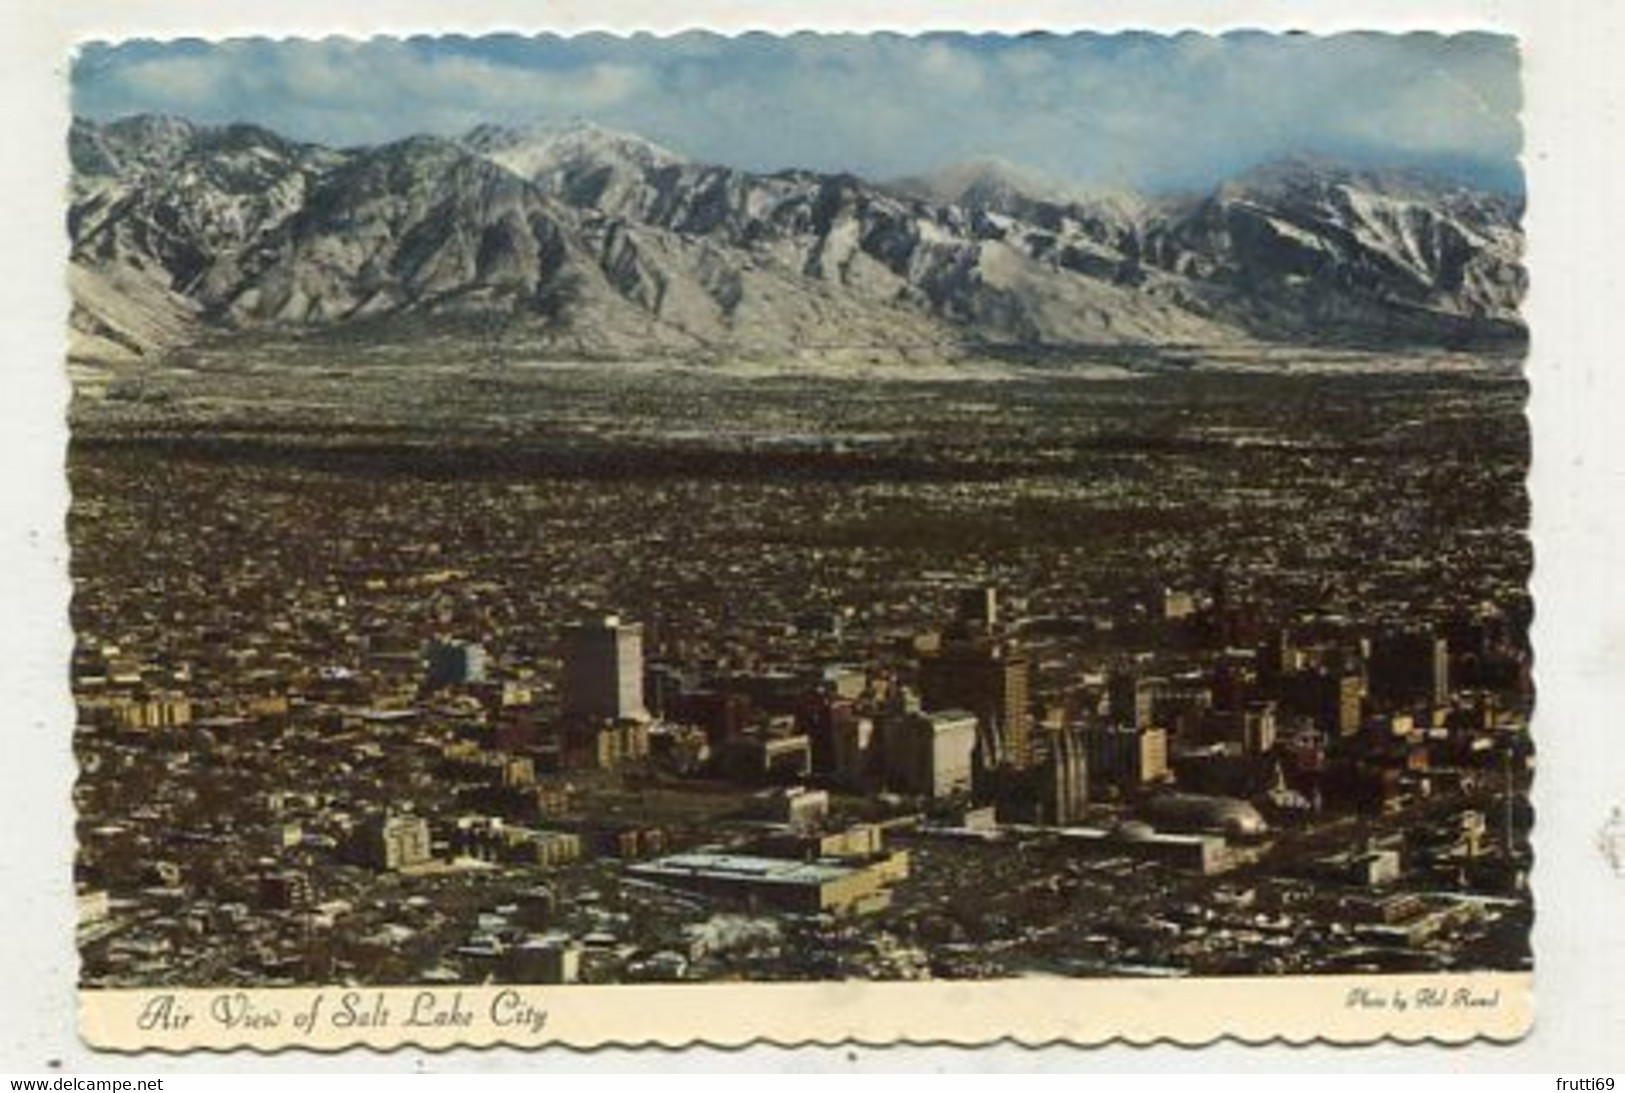 AK 108026 USA - Utah - Salt Lake City - Salt Lake City